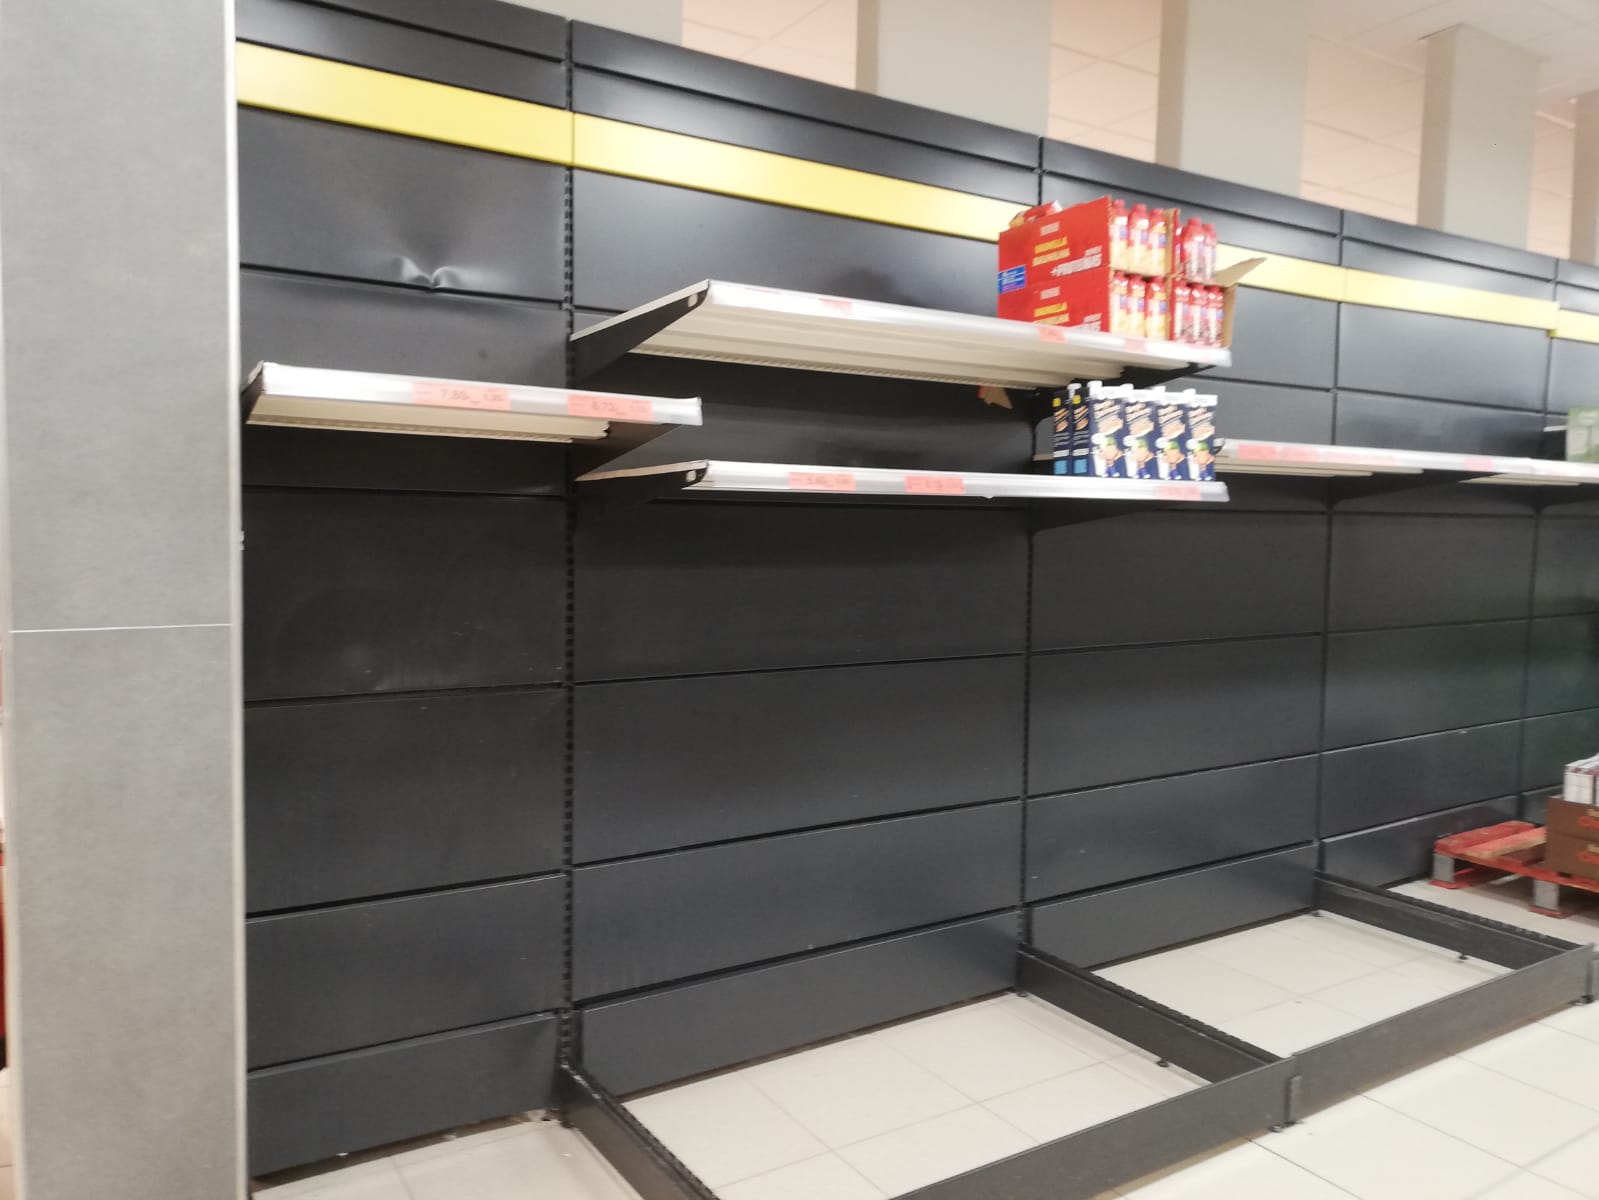 Estanterías vacías de leche en un conocido supermercado de Guadalajara el lunes, 21 de marzo de 2022. (Foto: La Crónic@)